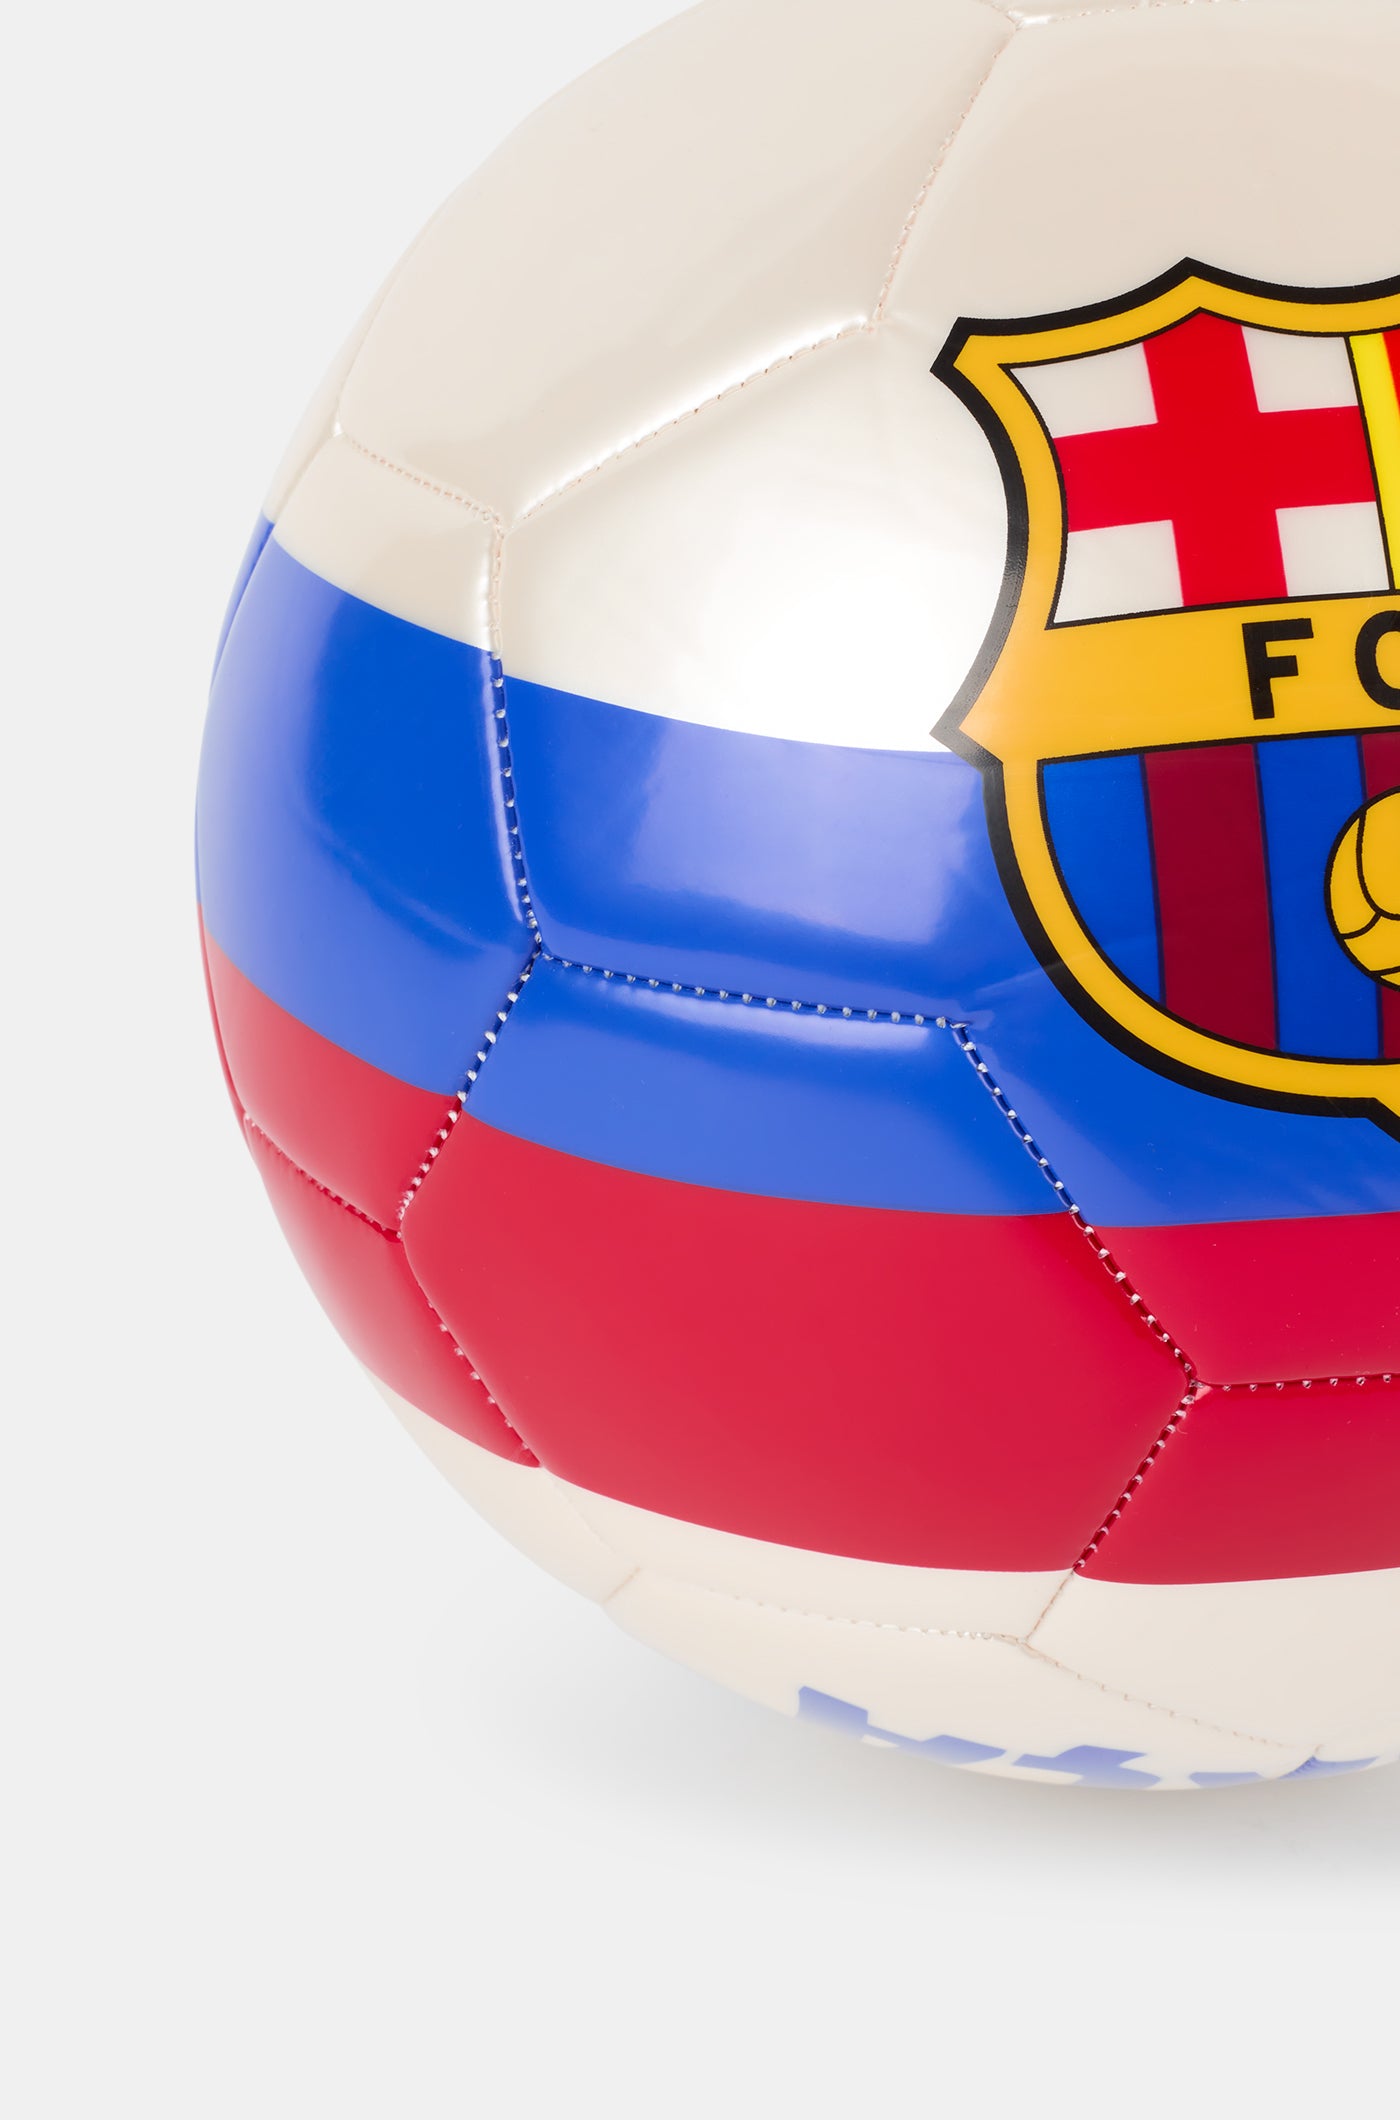 Balón 2ª equipación 23/24 Baça Nike – Barça Official Store Spotify Camp Nou